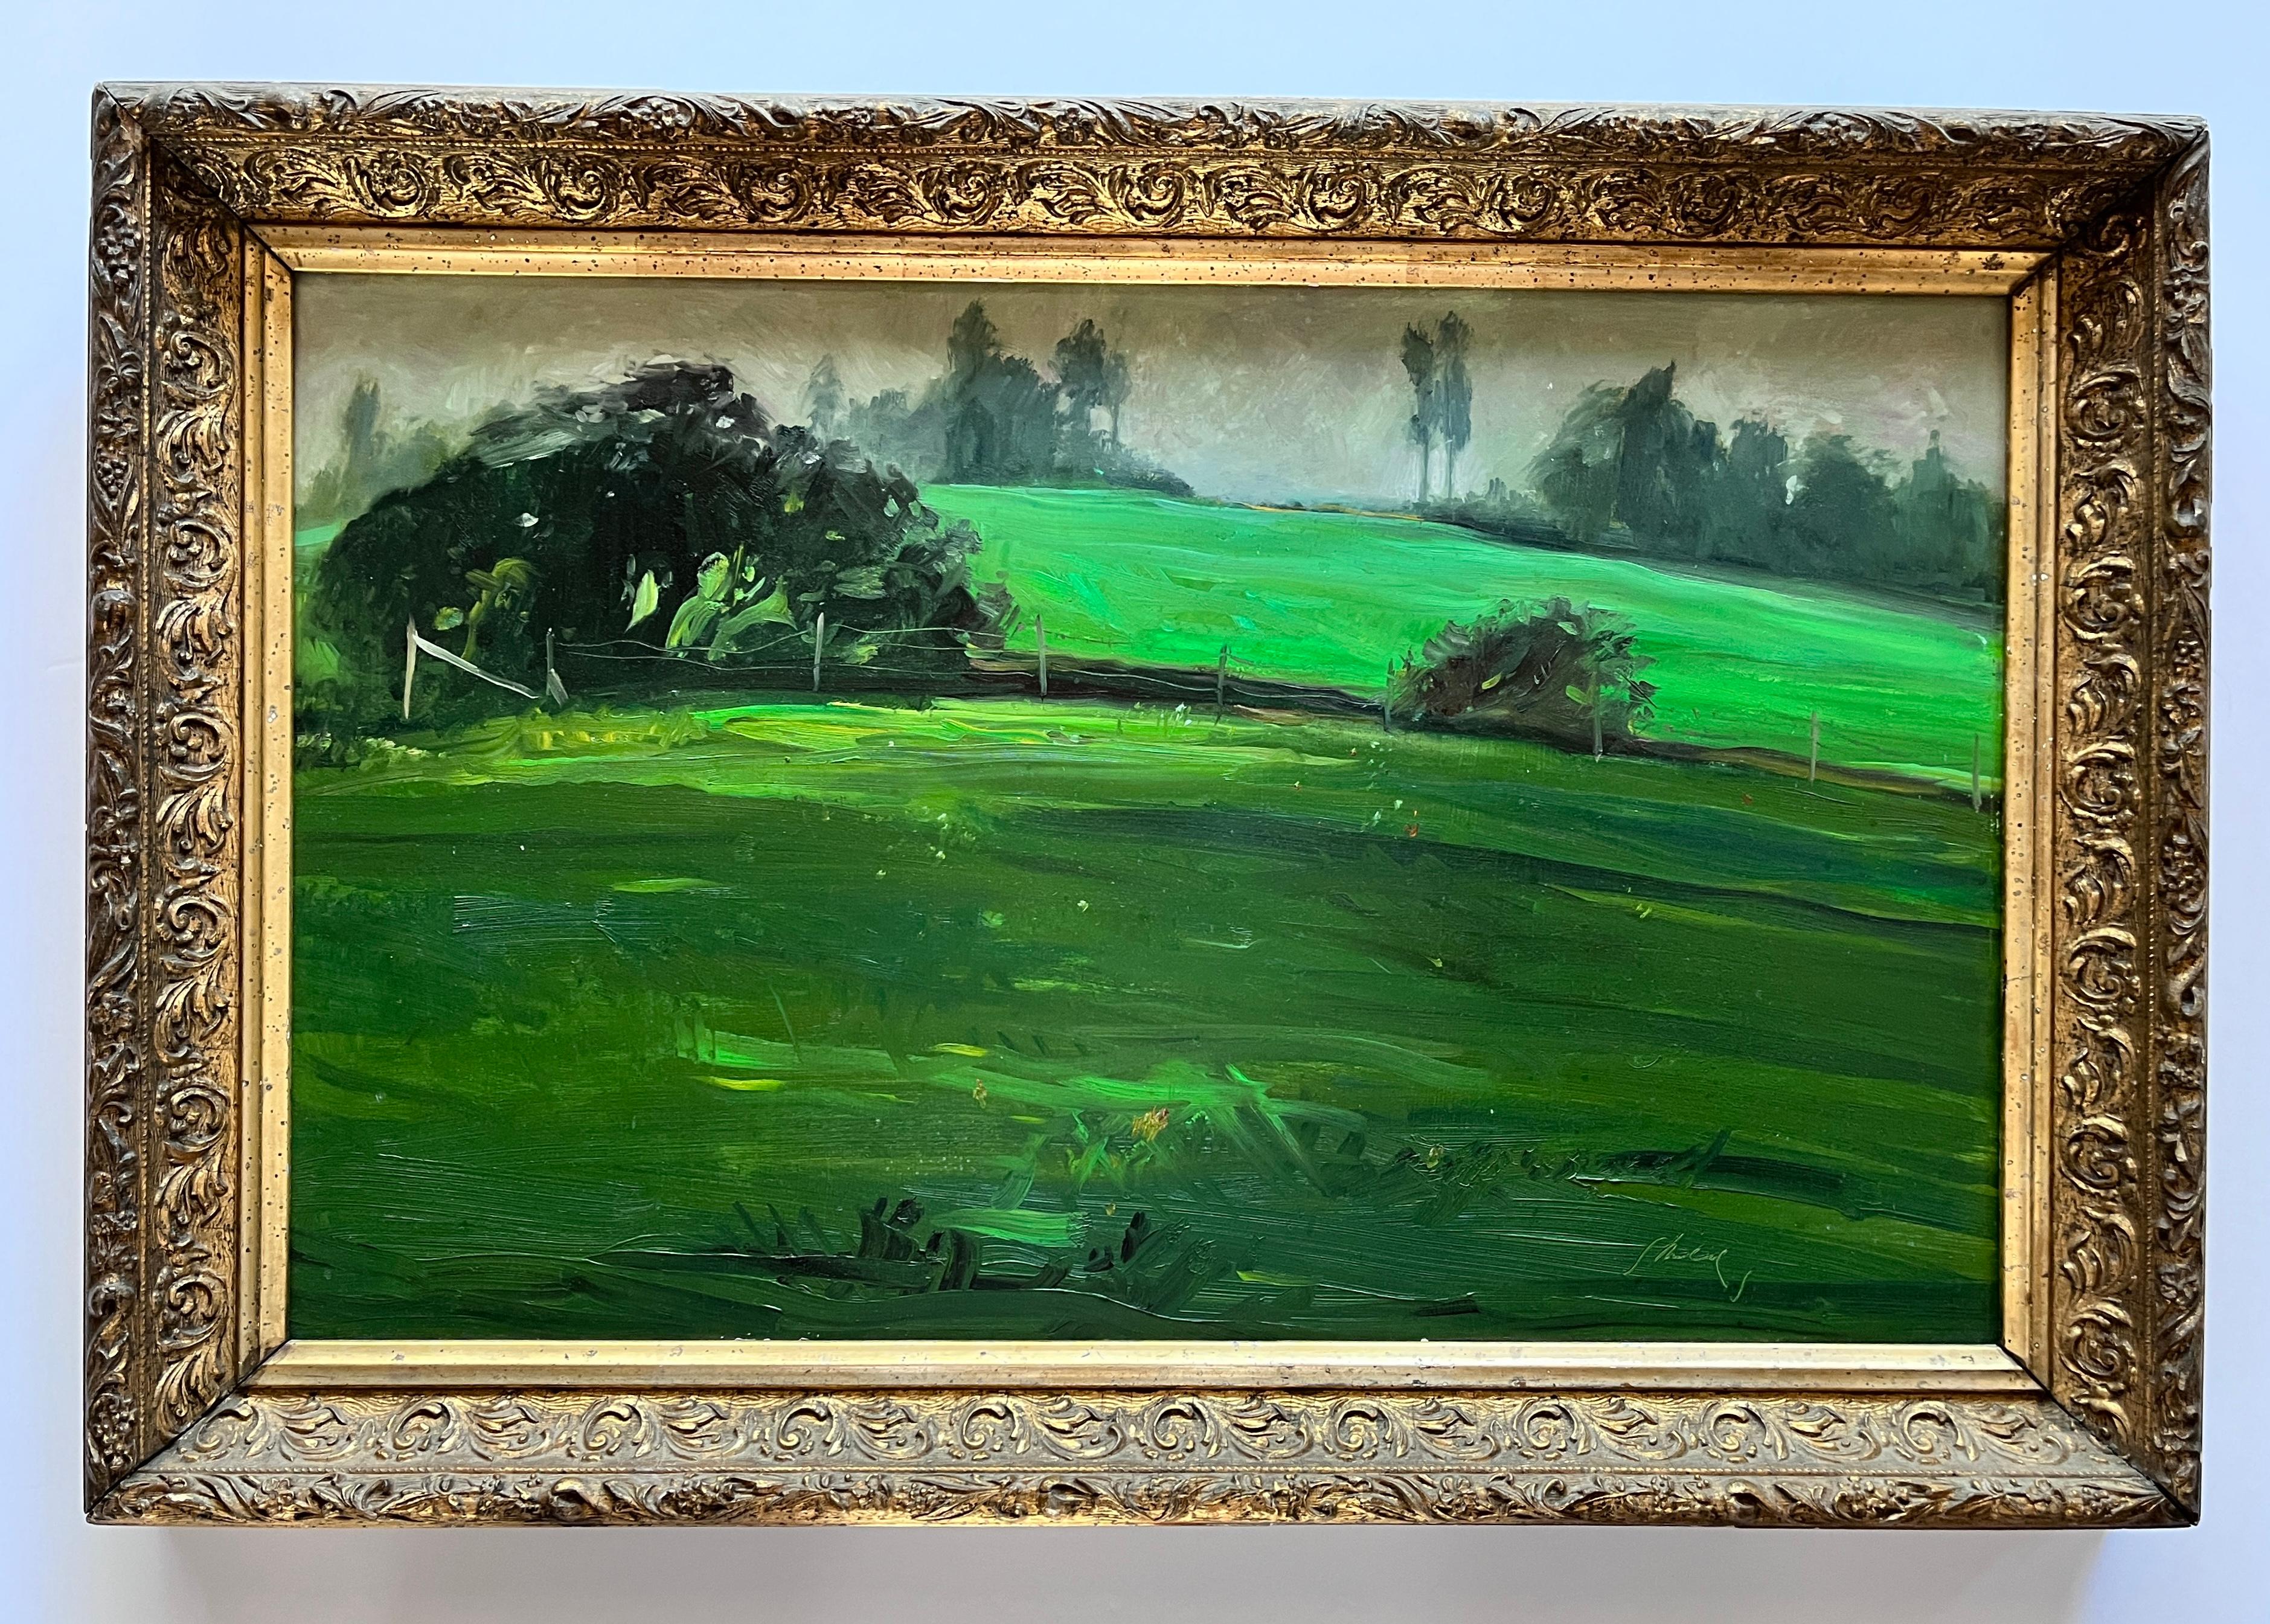 « Paysage vert », huile sur toile réaliste primée de l'illustrateur Bill Shields